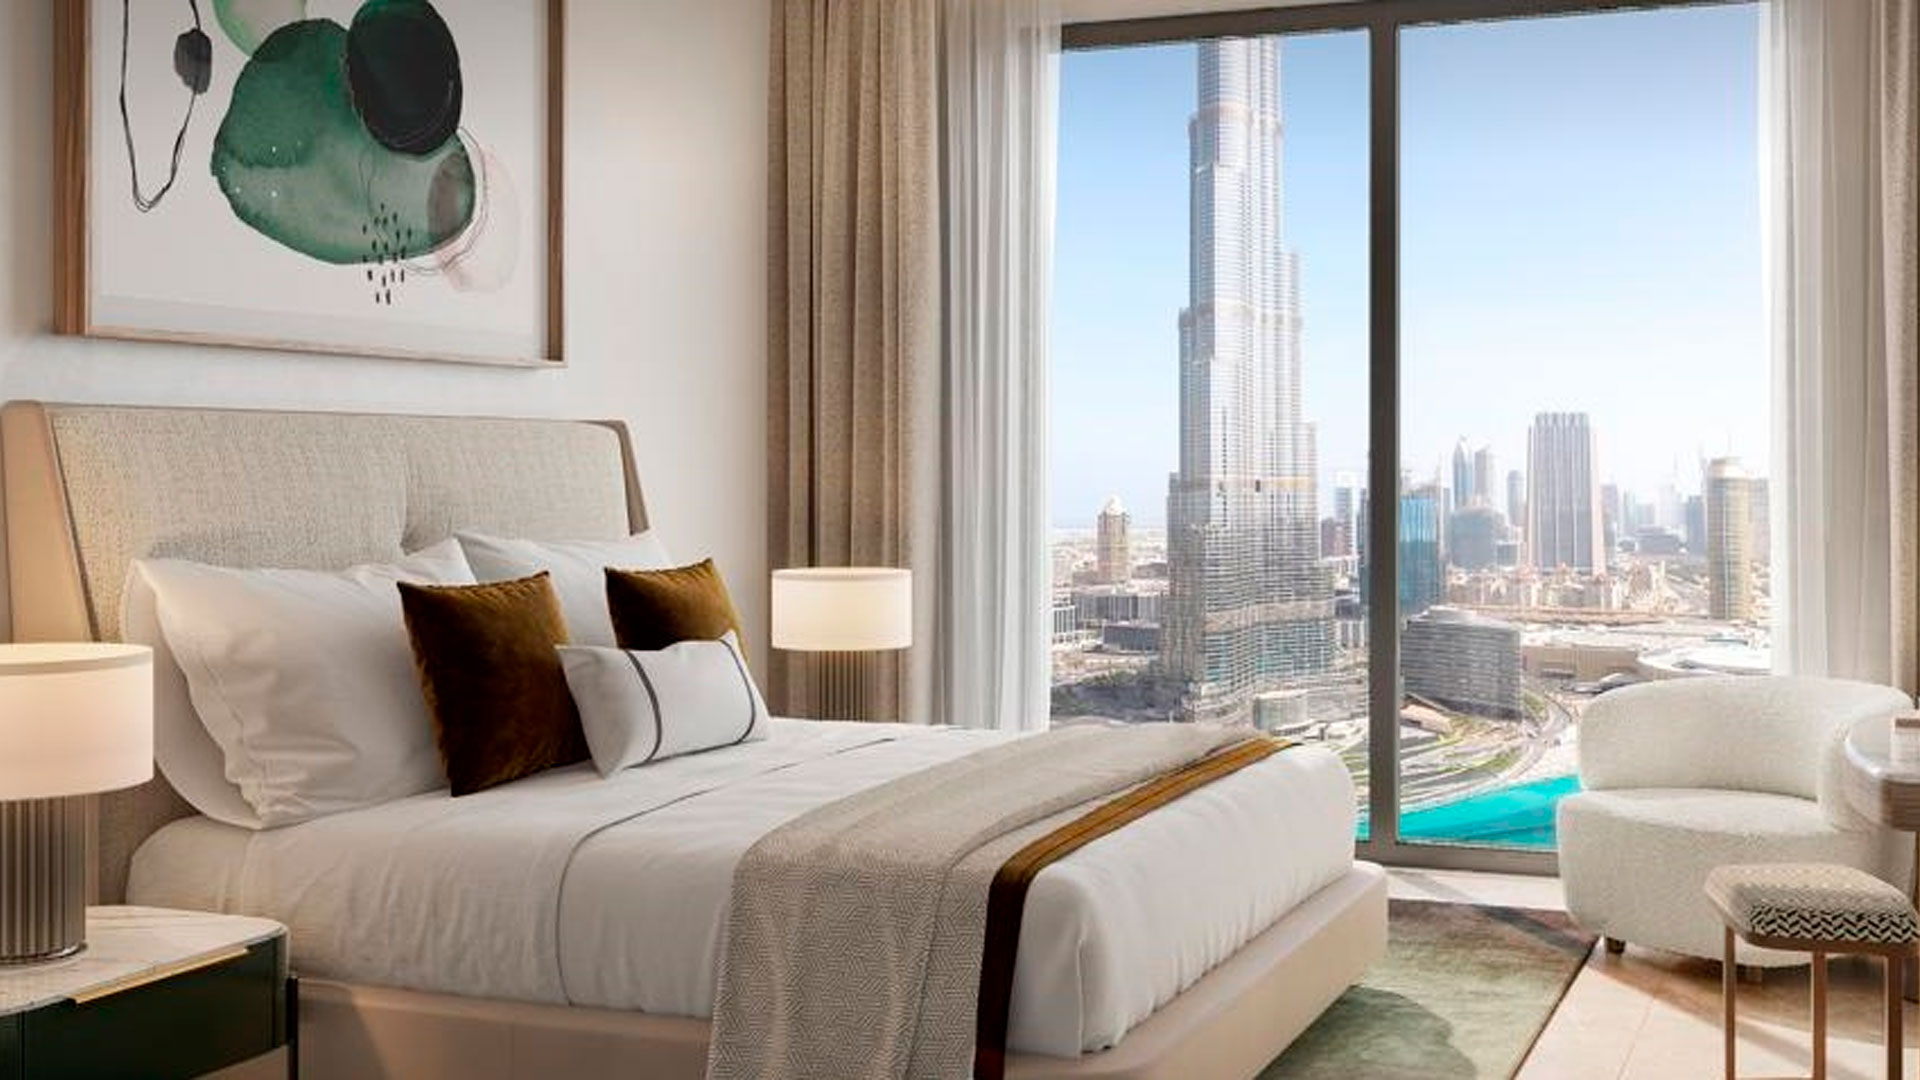 ST.REGIS RESIDENCES by Emaar Properties in Downtown Dubai, Dubai, UAE1